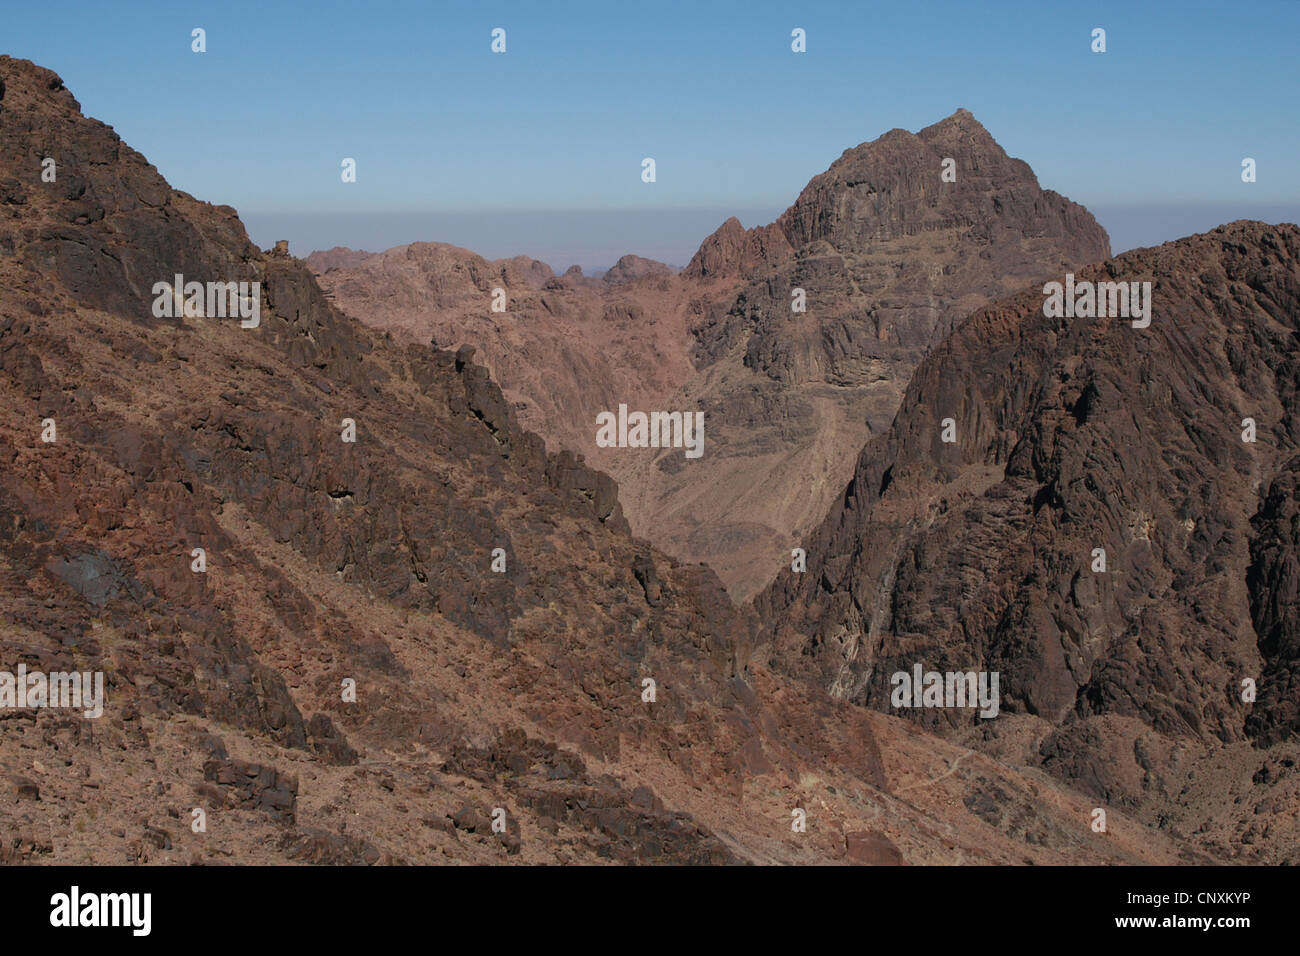 Mount Sinai also known as Jebel Musa (2,285 m) on Sinai Peninsula, Egypt. Stock Photo